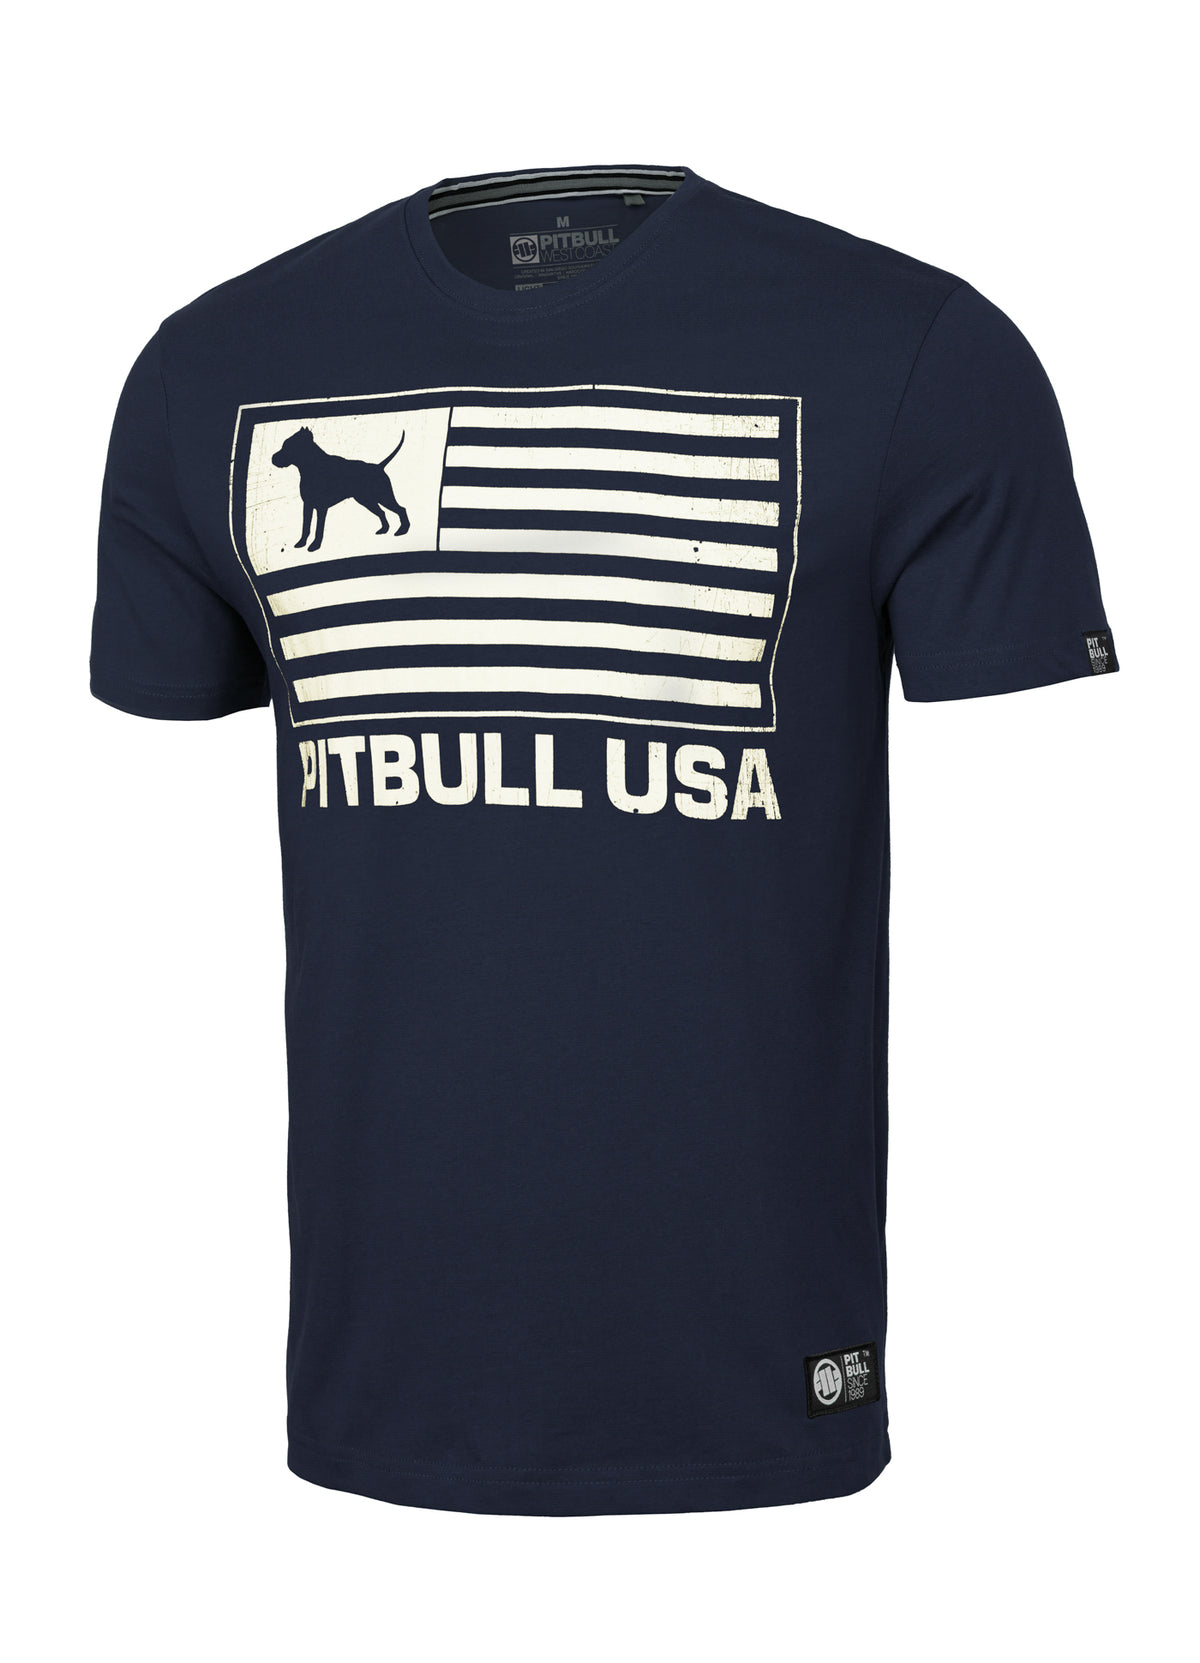 PITBULL USA Lightweight Dark Navy T-shirt - Pitbullstore.eu